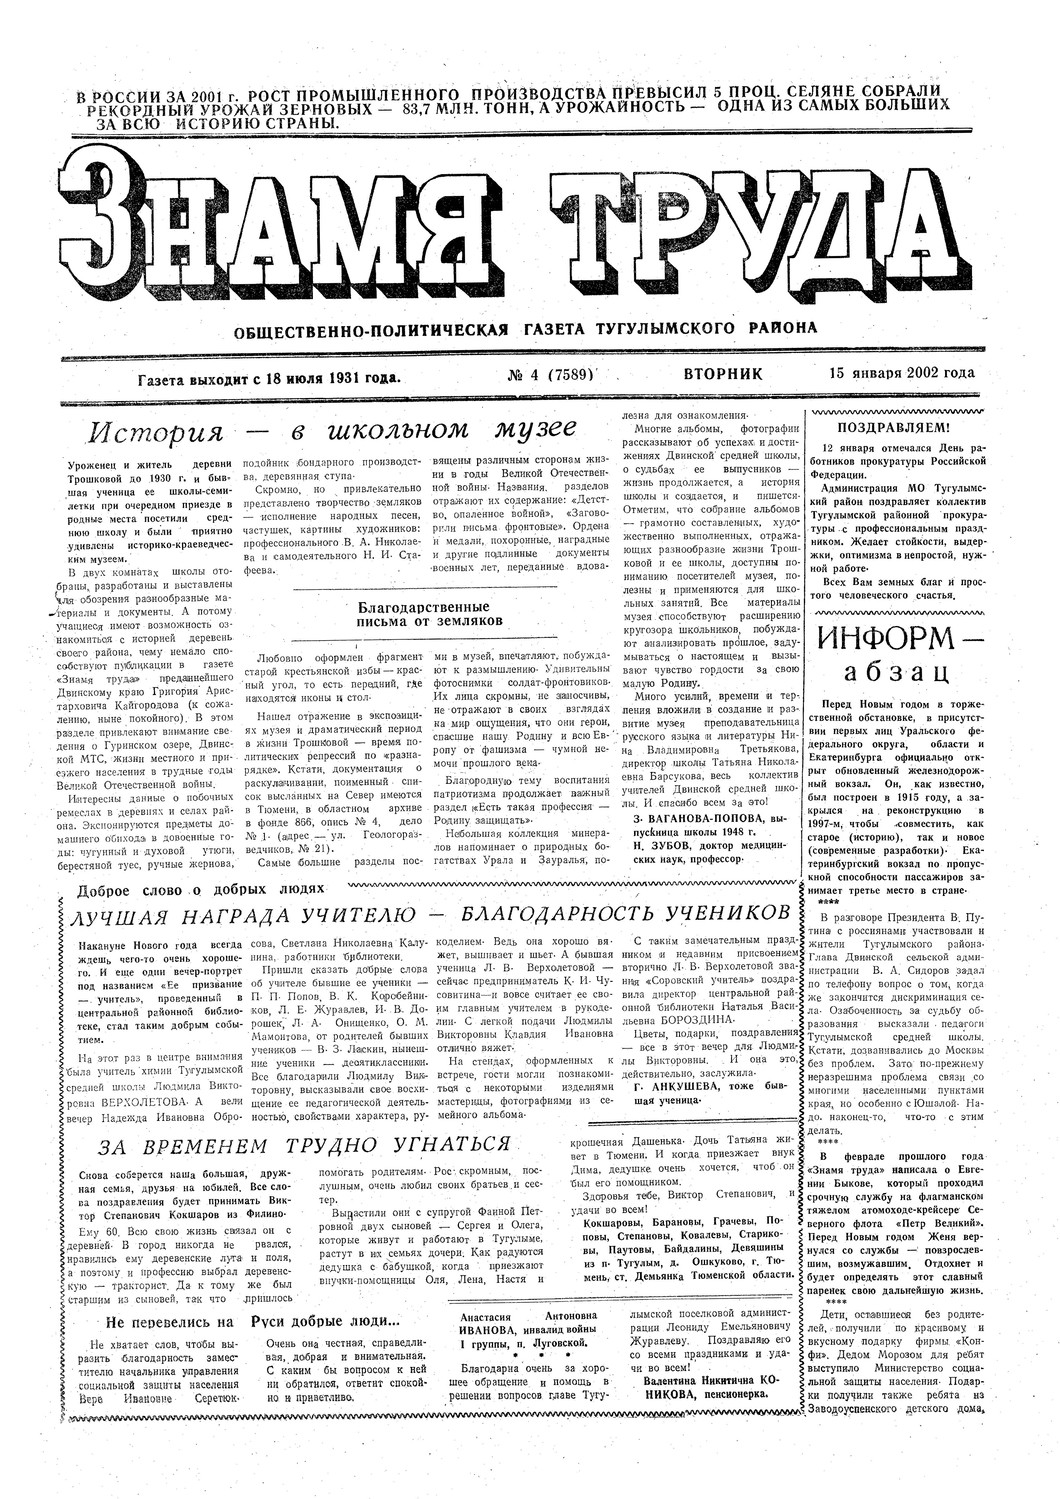 Знамя труда №4 от 15 января 2002г.